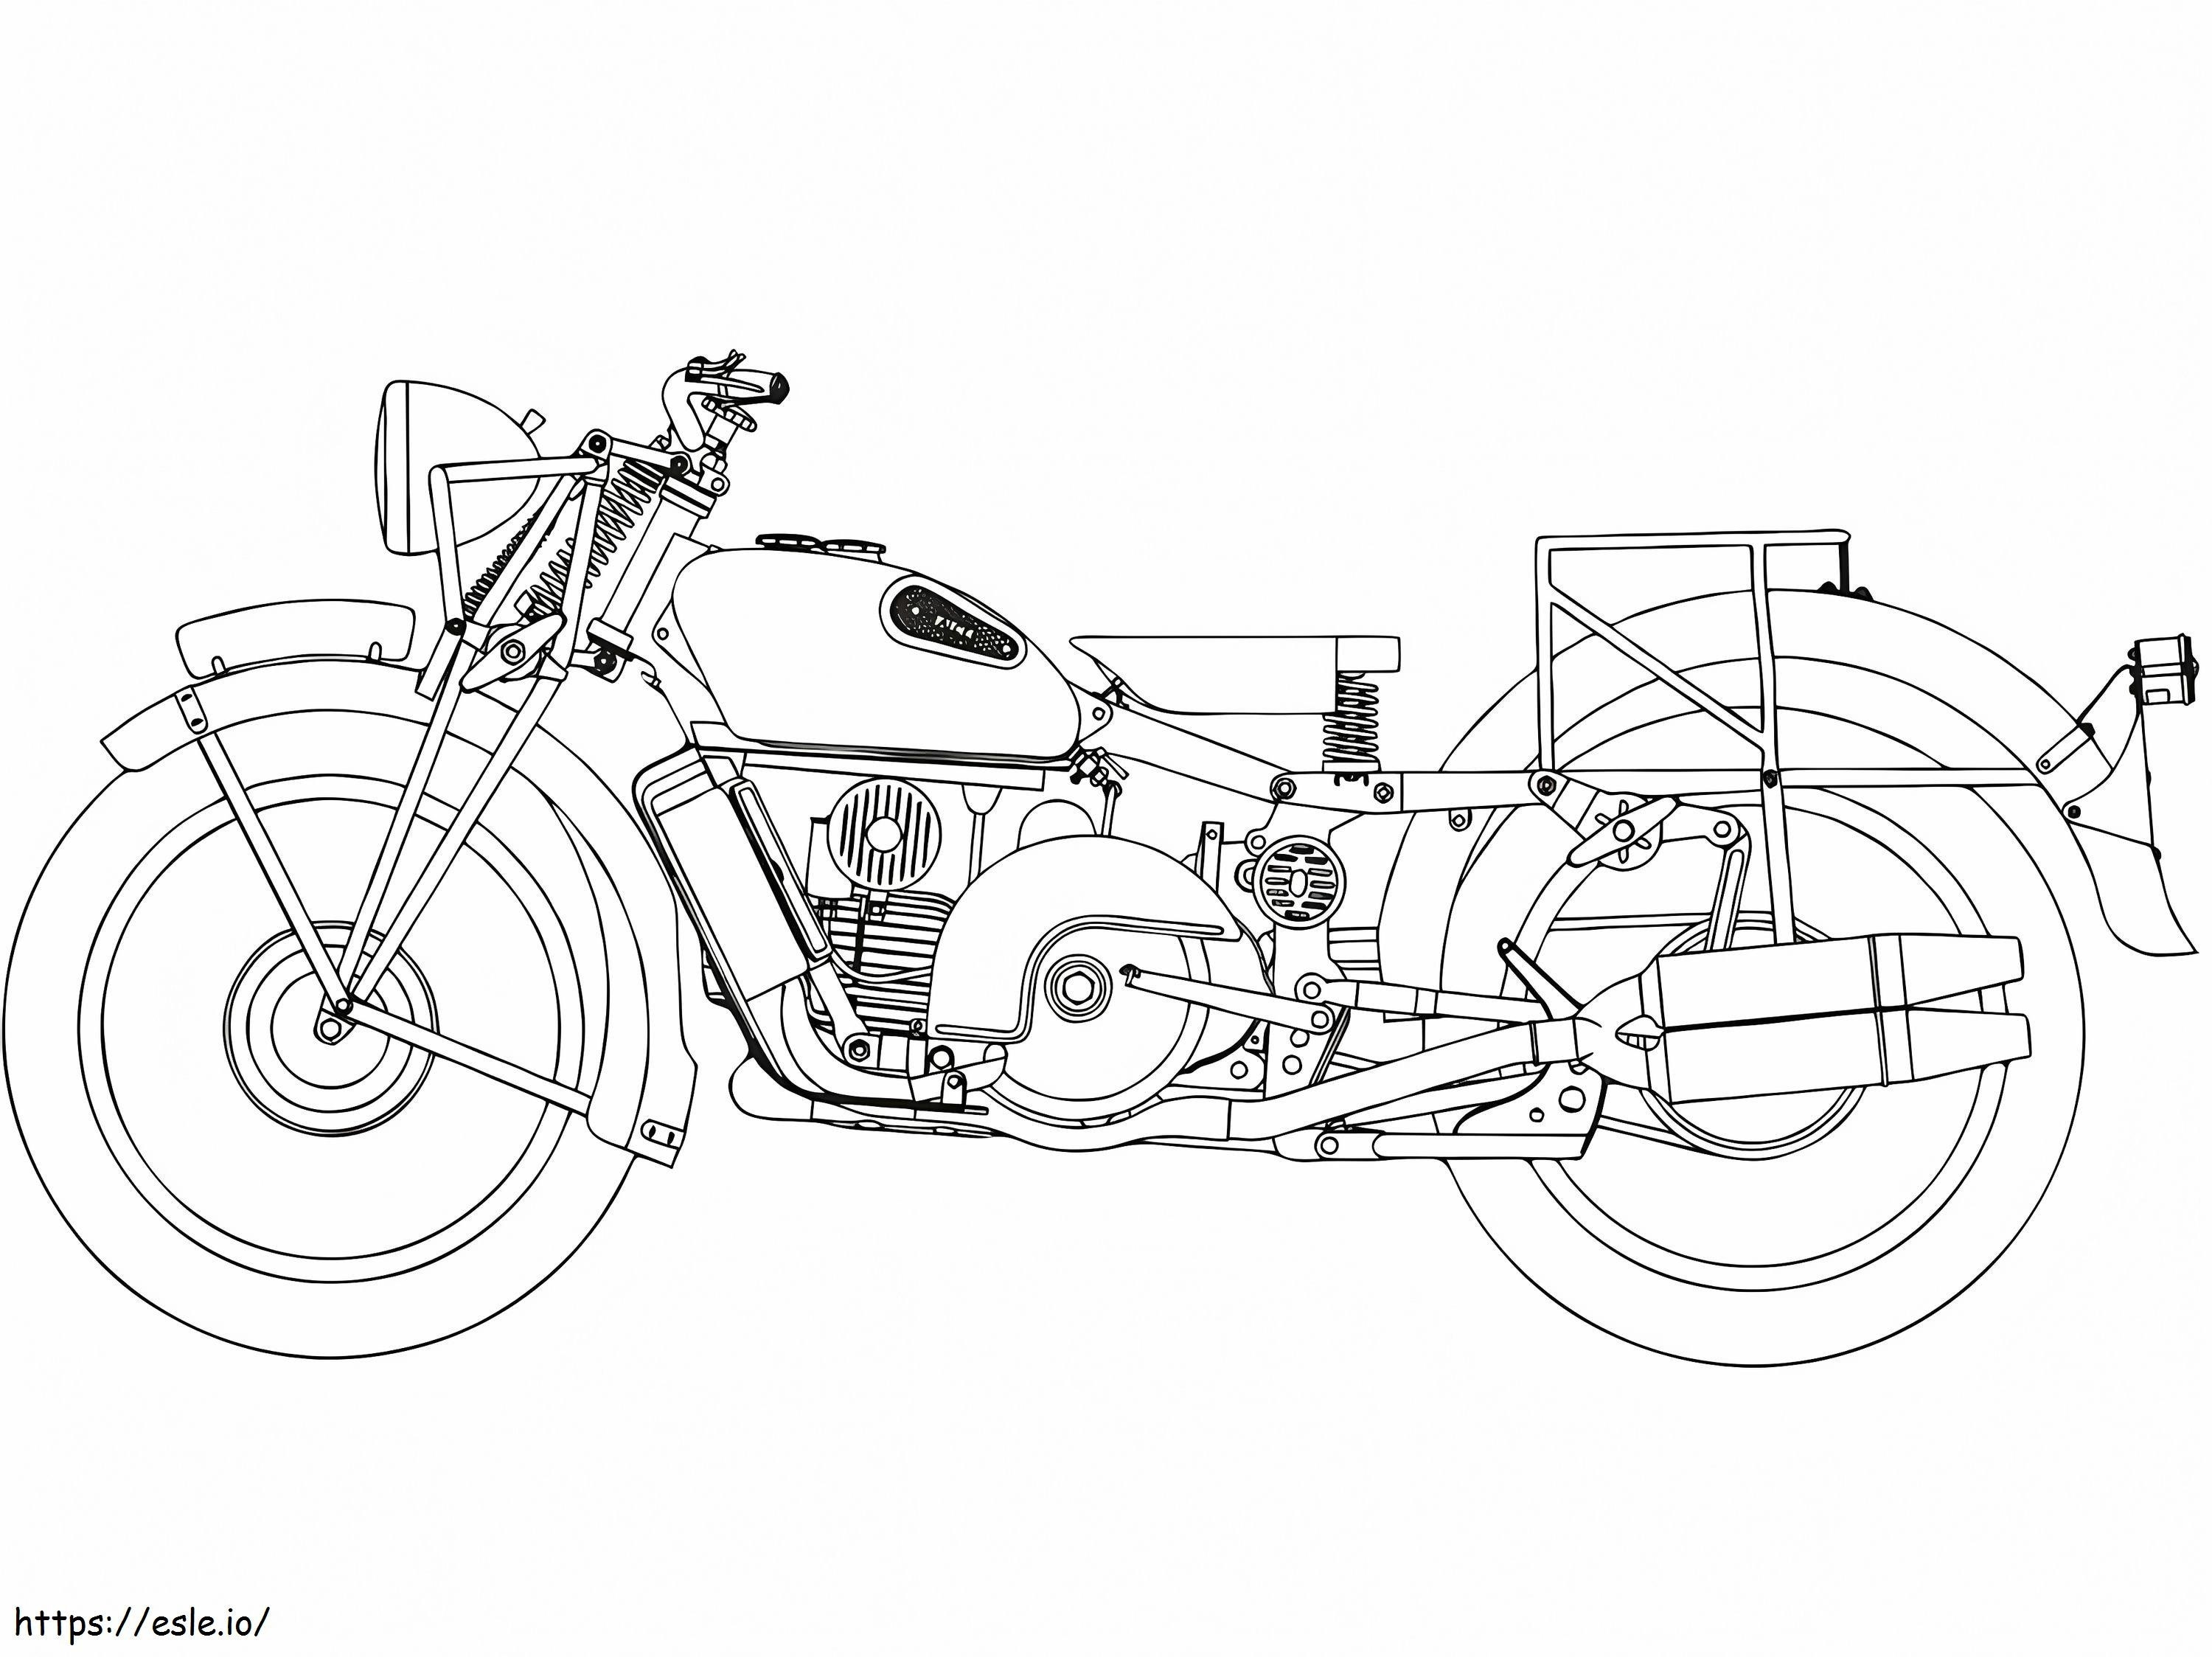 Coloriage Moto Guzzi Alice à imprimer dessin